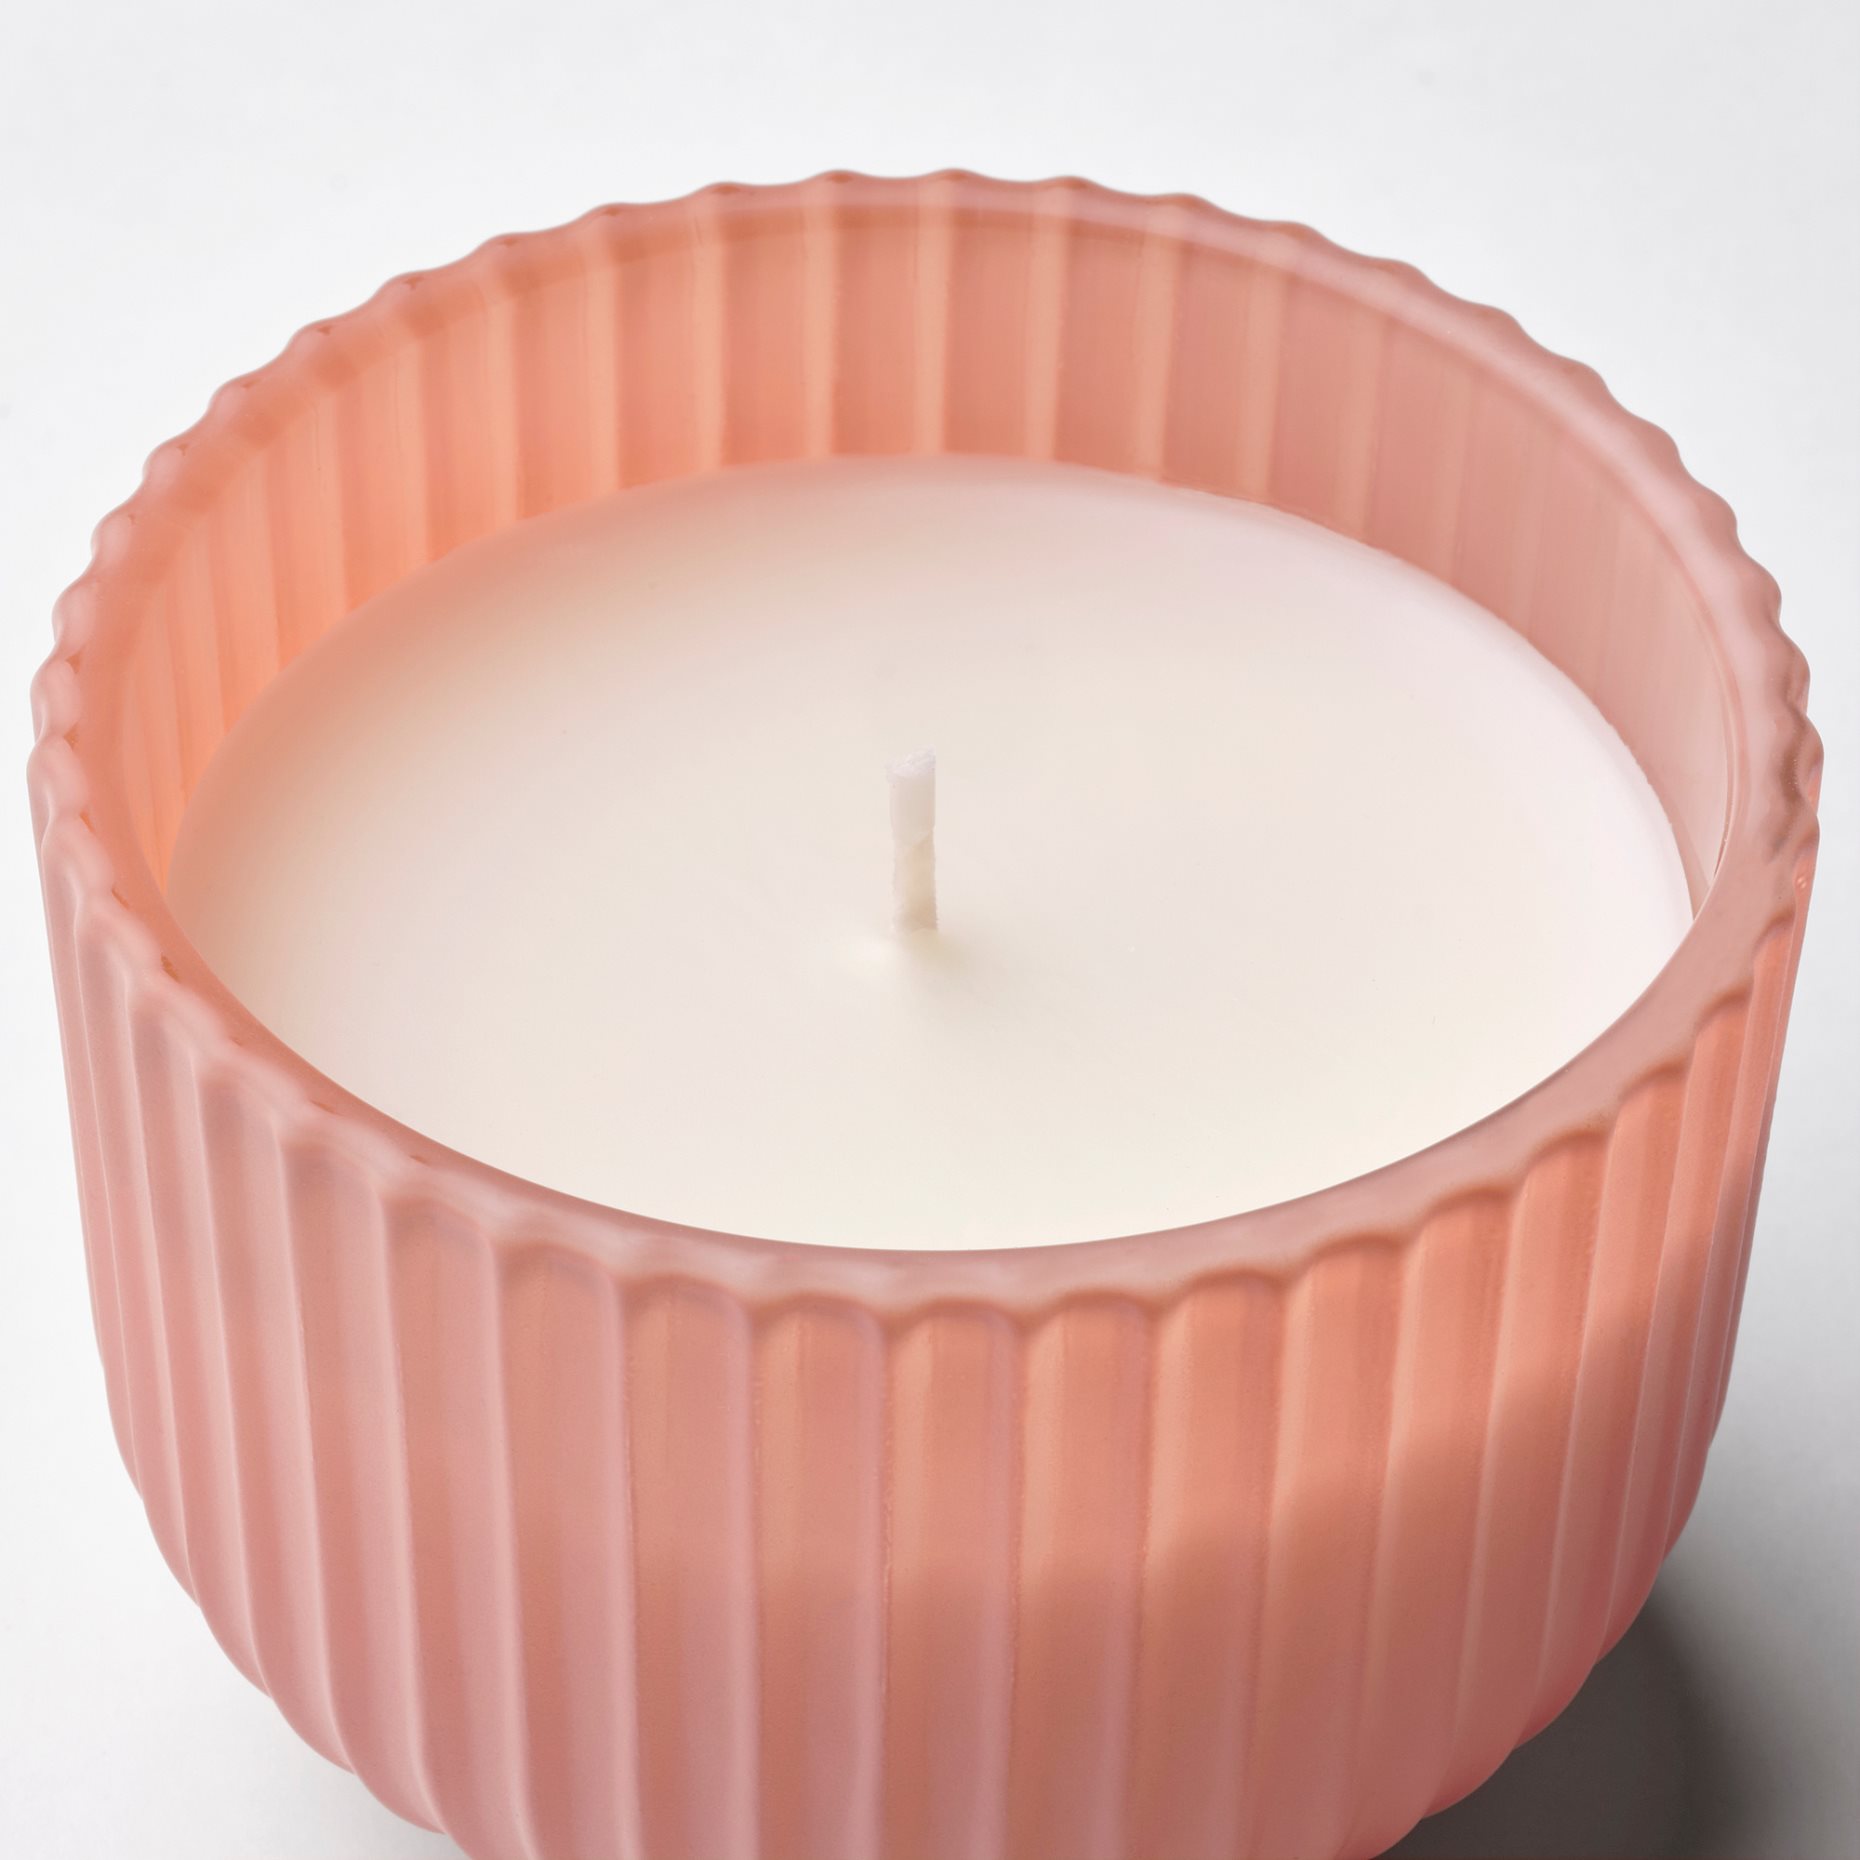 SOCKERLÖNN, αρωματικό κερί σε ποτήρι/Ροδάκινο & άνθη, 20 hr, 905.381.57